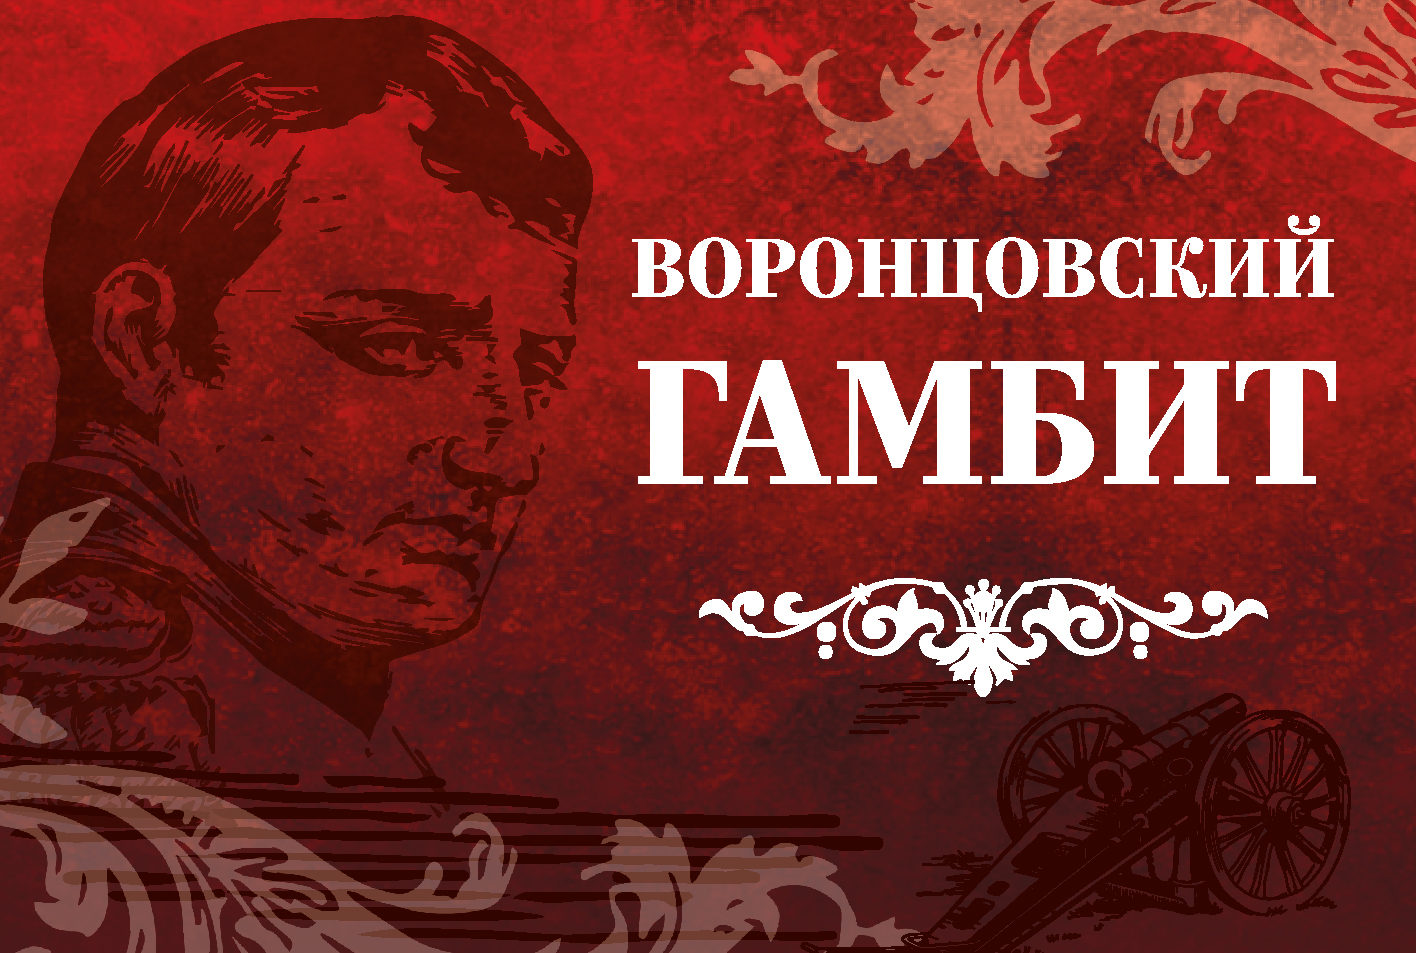 Игра «Воронцовский гамбит» – события на сайте «Московские Сезоны»